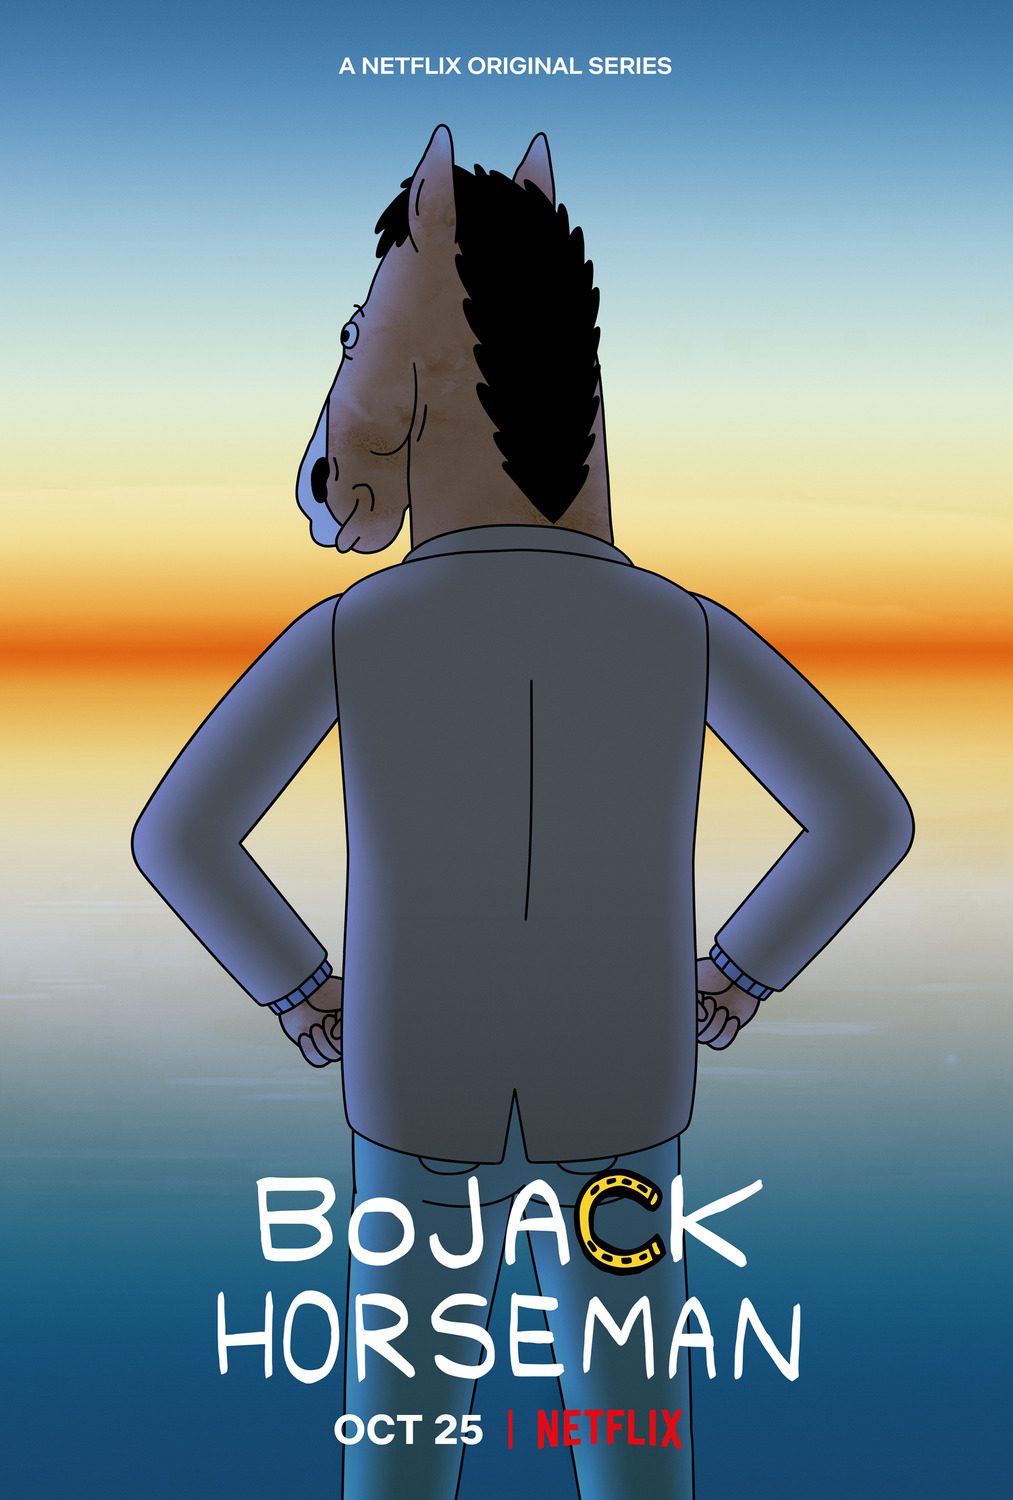 Netflix's BoJack Horseman